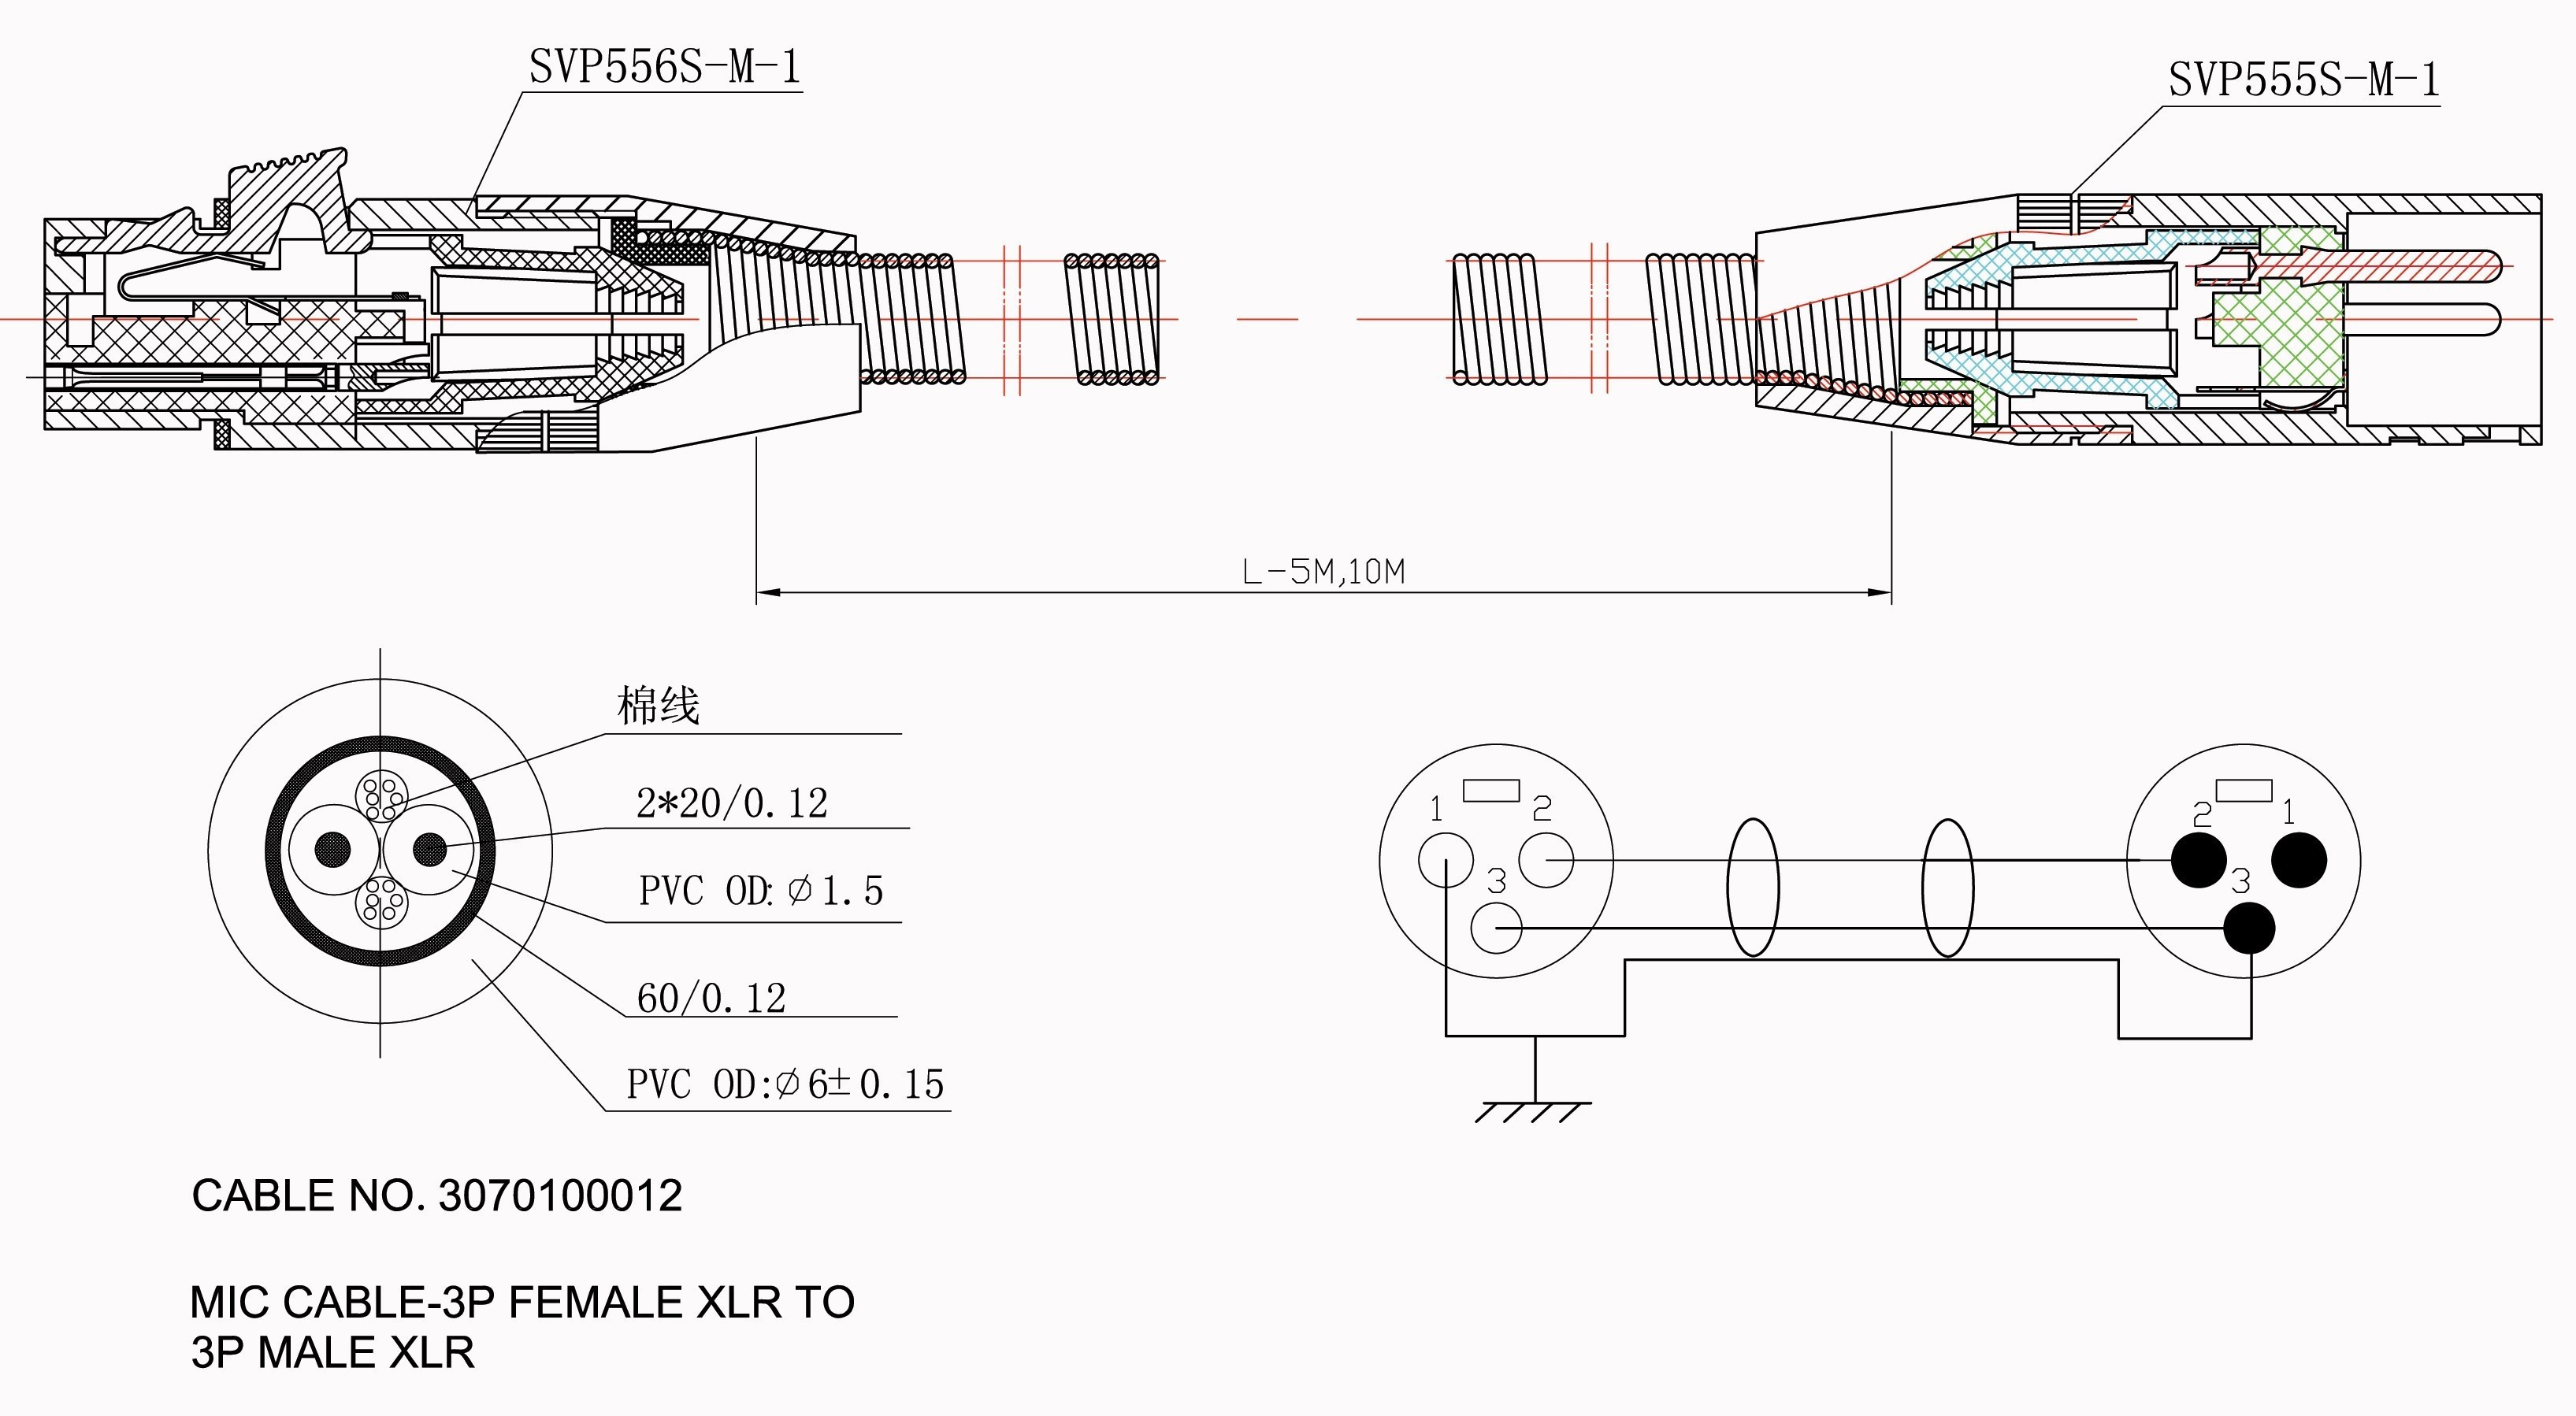 Wiring Diagram for Mallard Motorhome Save Legend Trailer Wiring Diagram & Wiring Diagram Color Legend